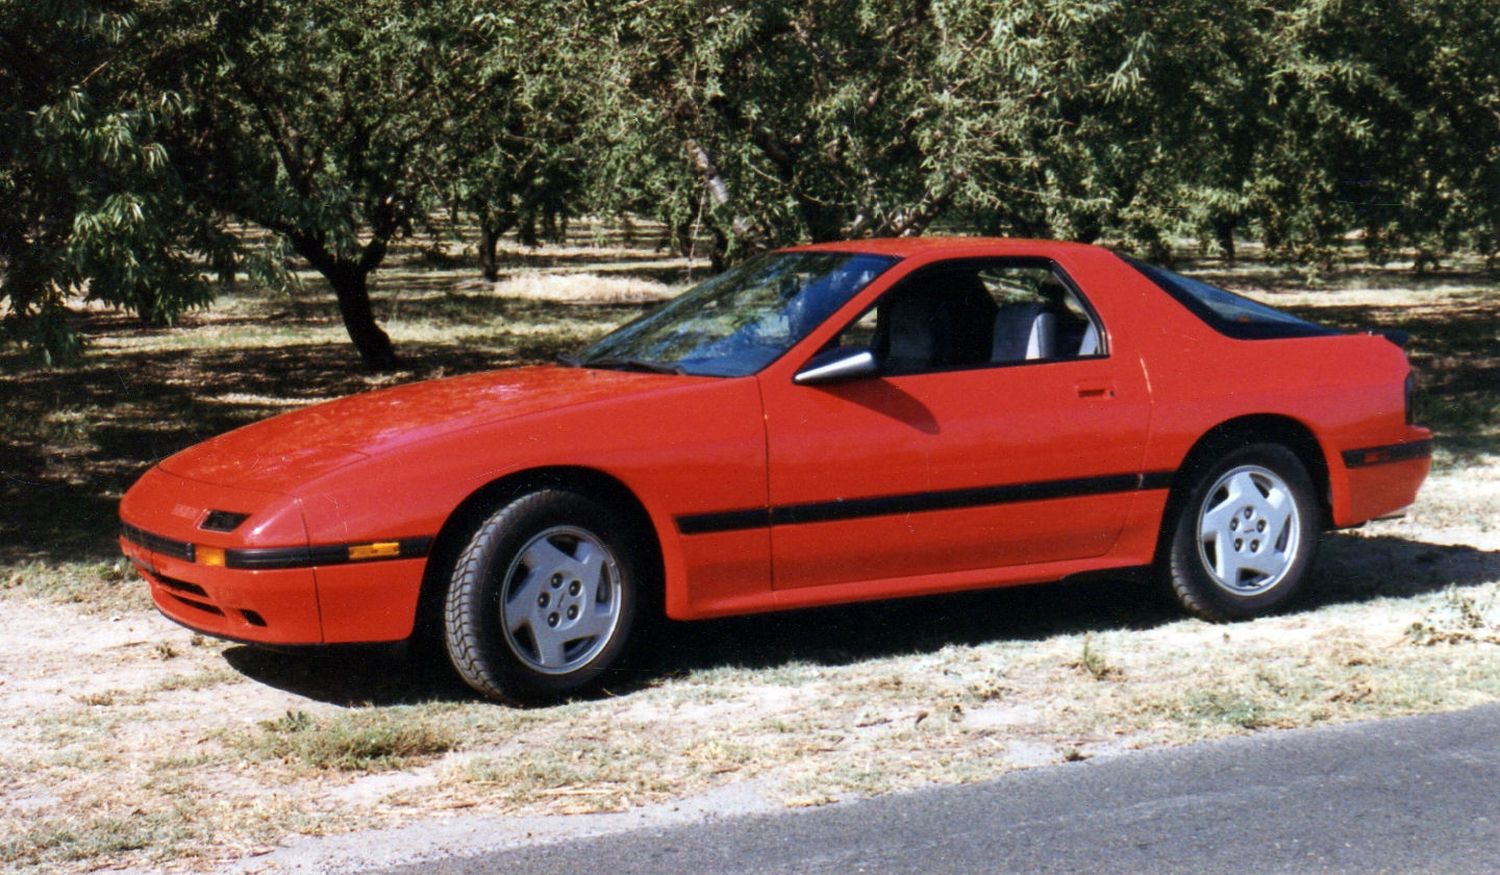 1986 Mazda RX7